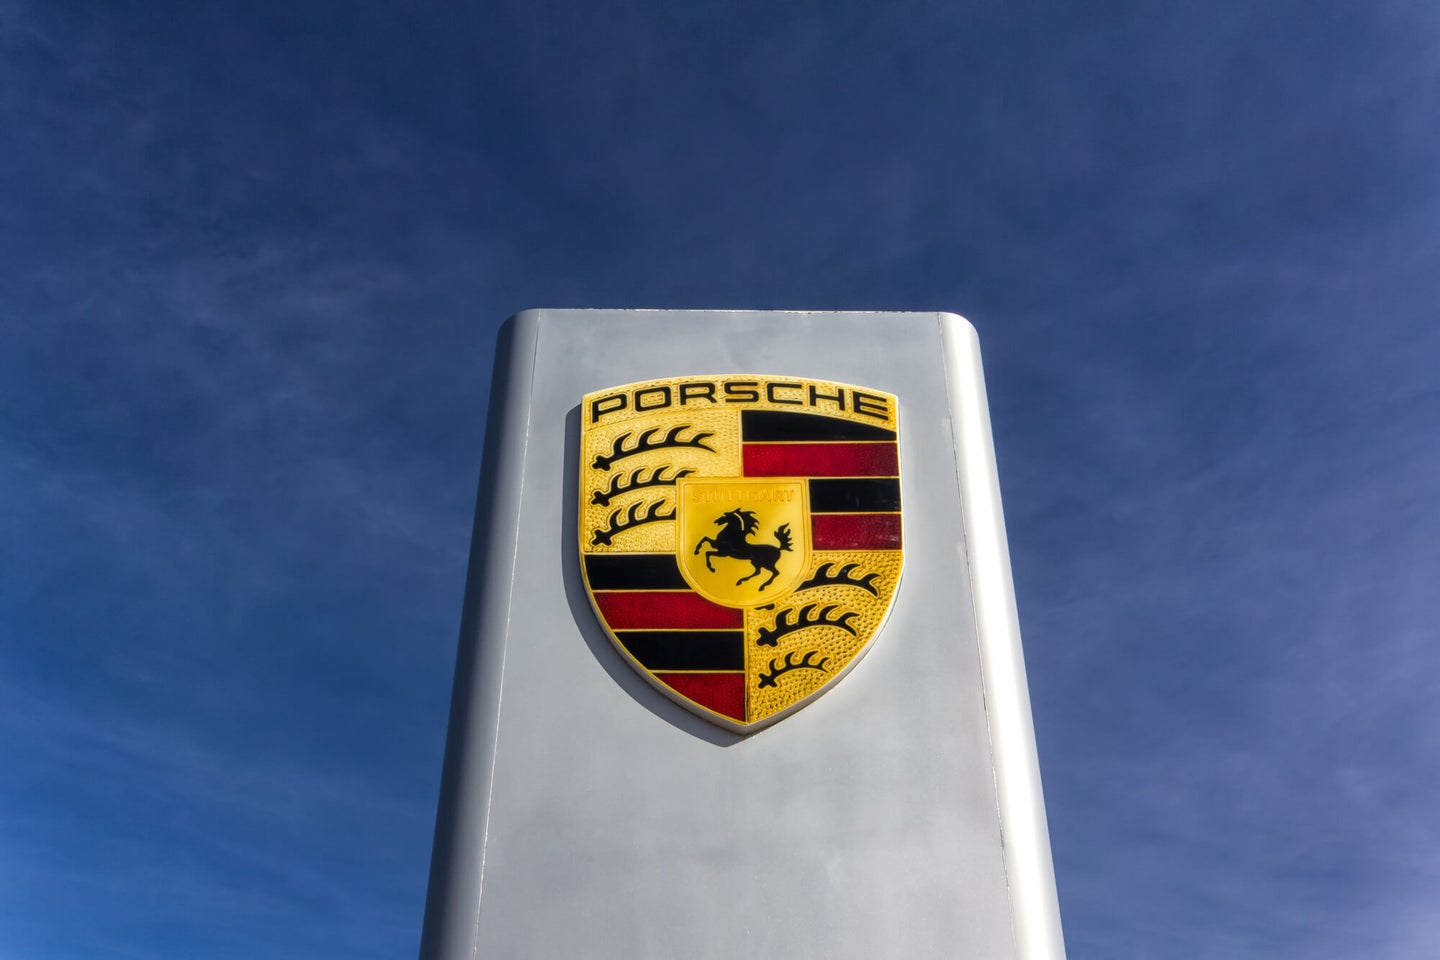 Porsche’s Extended Warranty: Comprehensive Porsche Protection